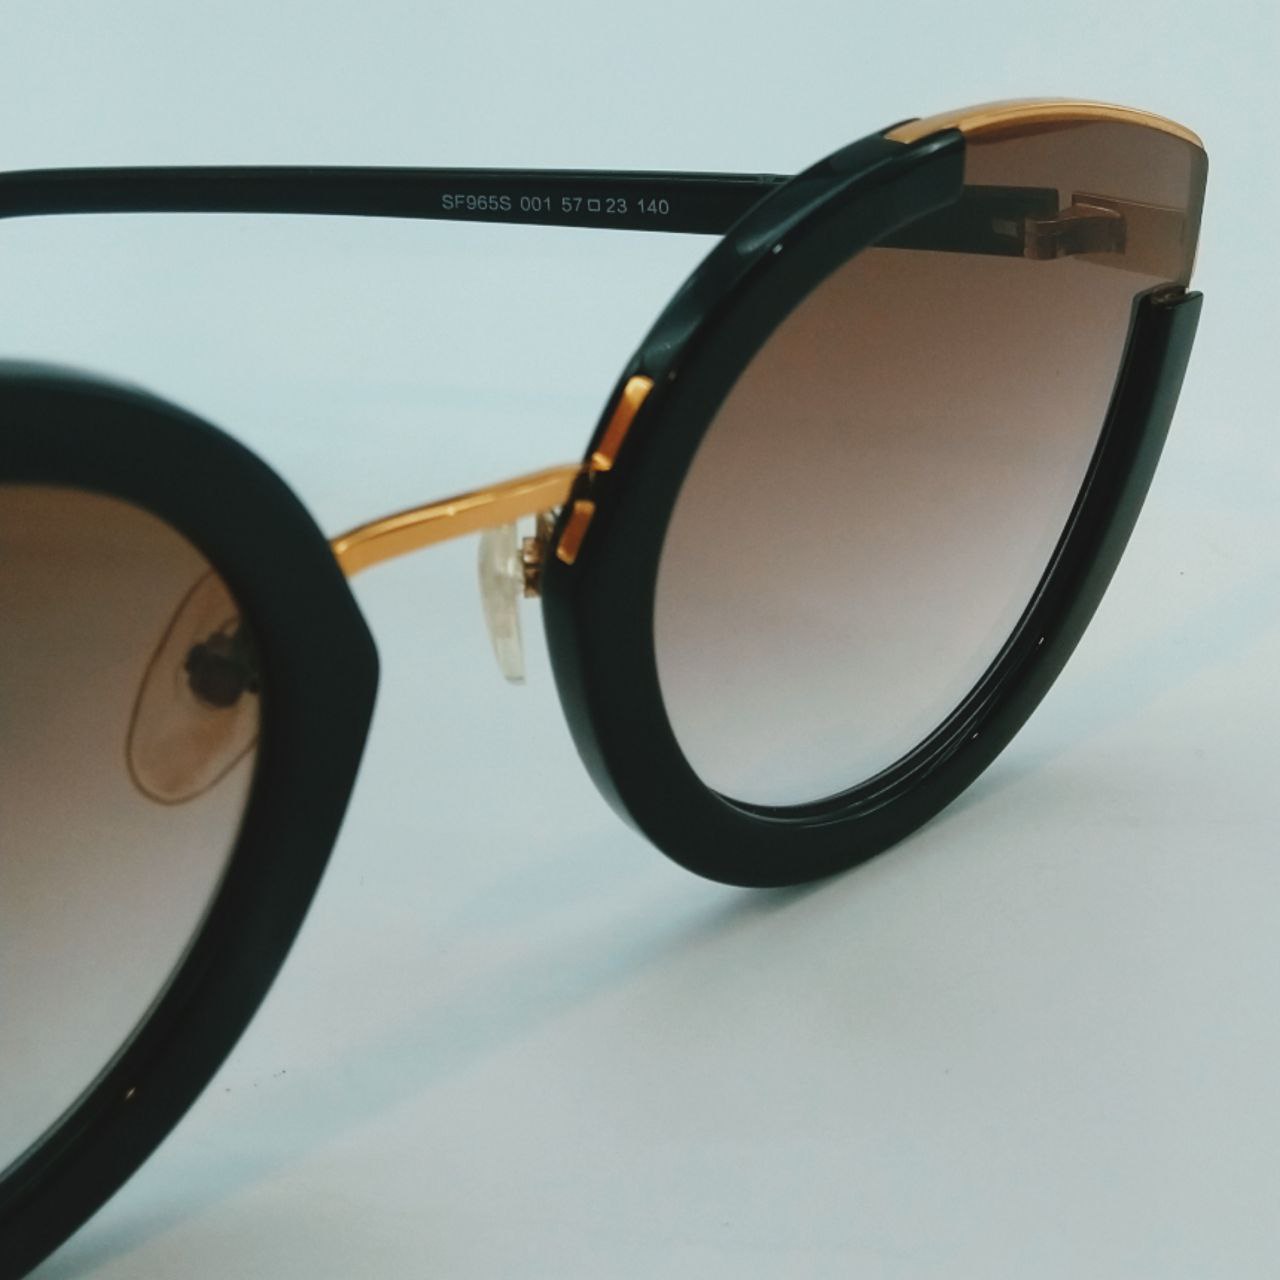 عینک آفتابی زنانه سالواتوره فراگامو مدل SF965S 001 -  - 5